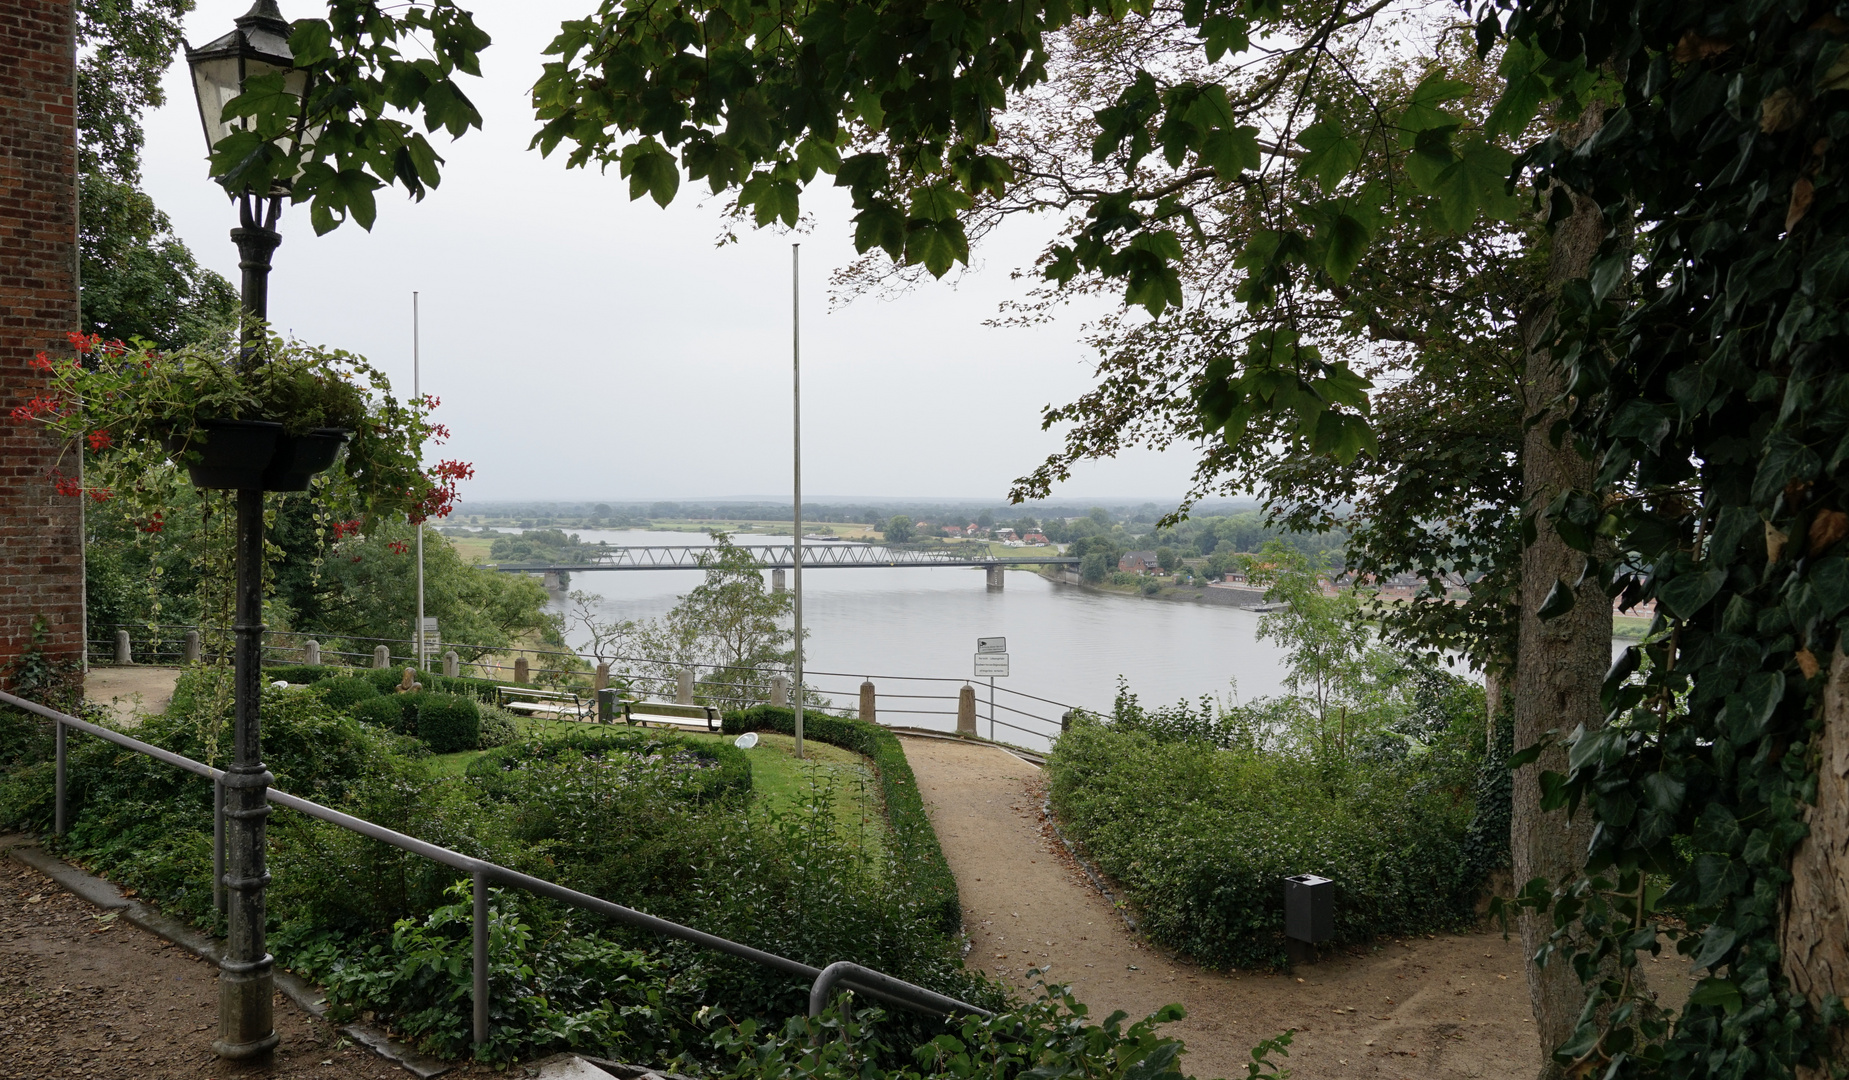 Schmuddelwetter in Lauenburg / Blick auf die Elbe 